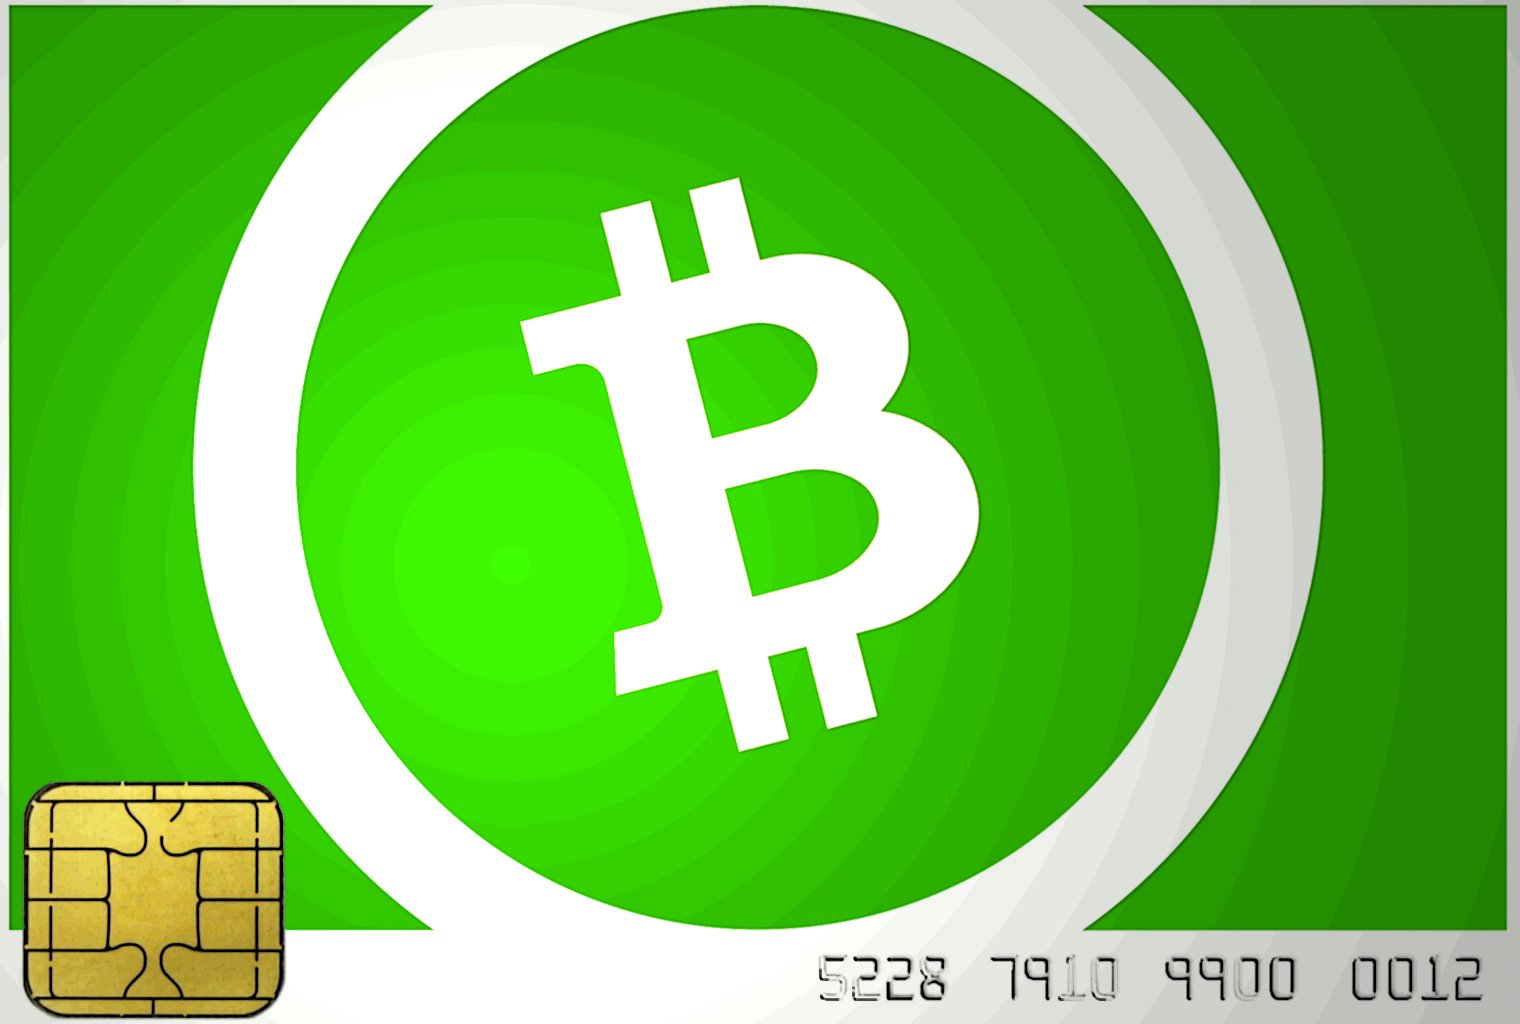 Tarjeta inteligente de demostración de desarrolladores que produce firmas de efectivo de Bitcoin